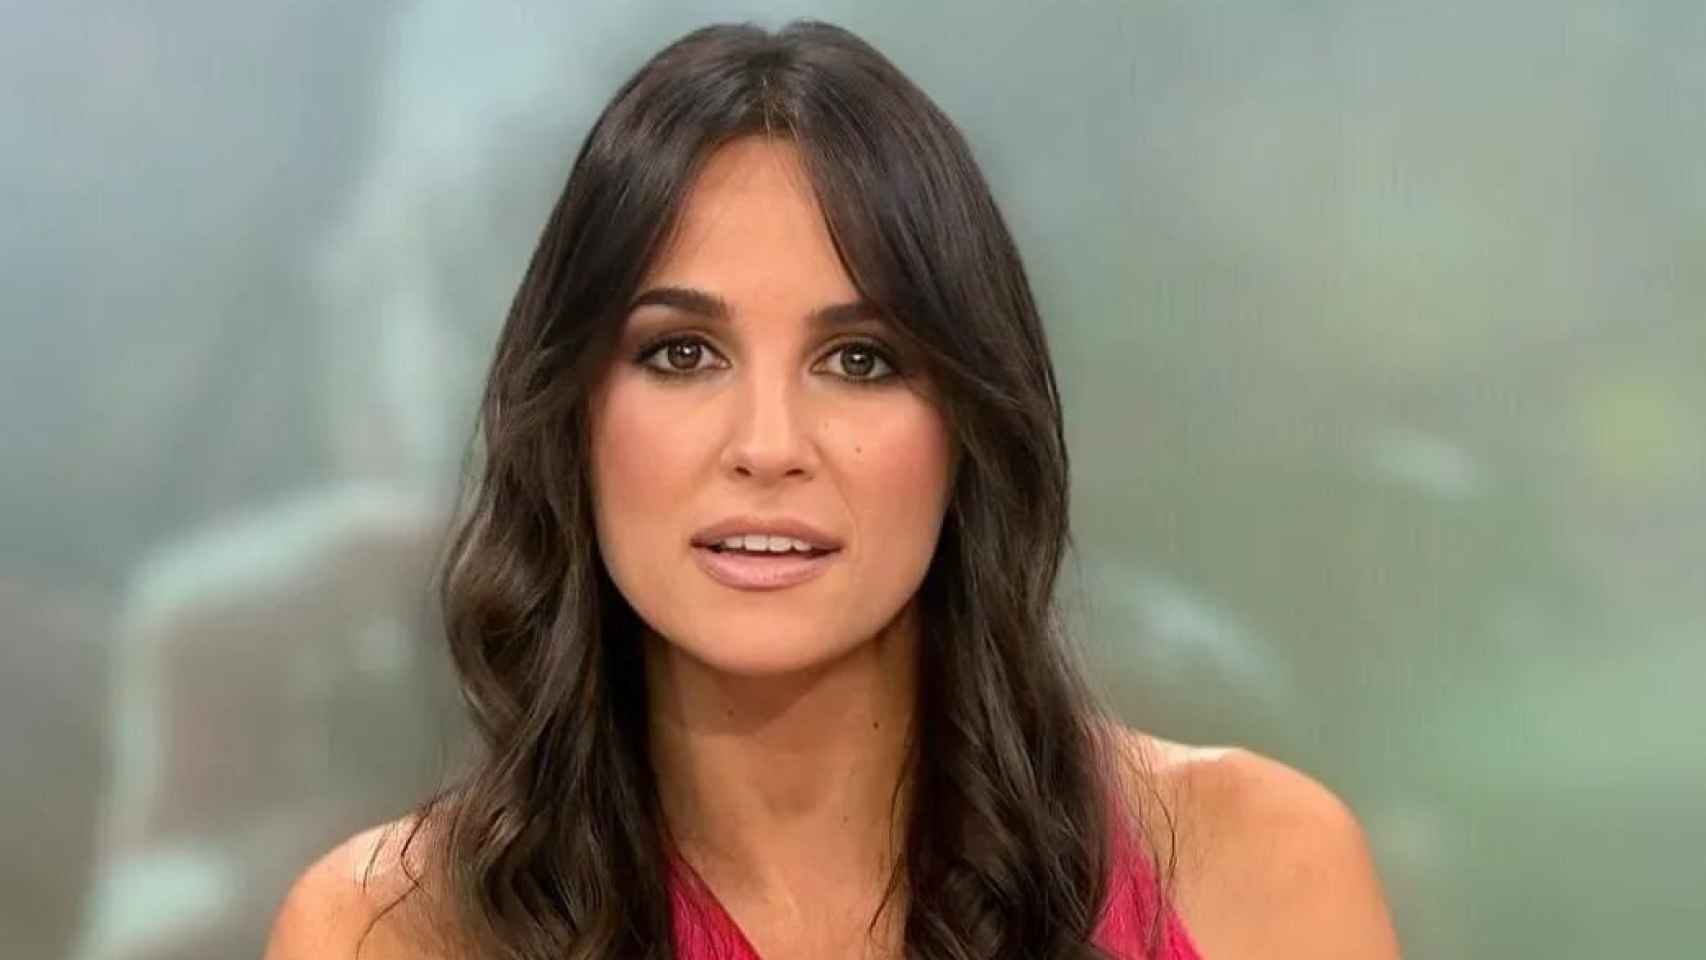 Imágenes del día: el día raruno de la presentadora Lorena García en Antena 3